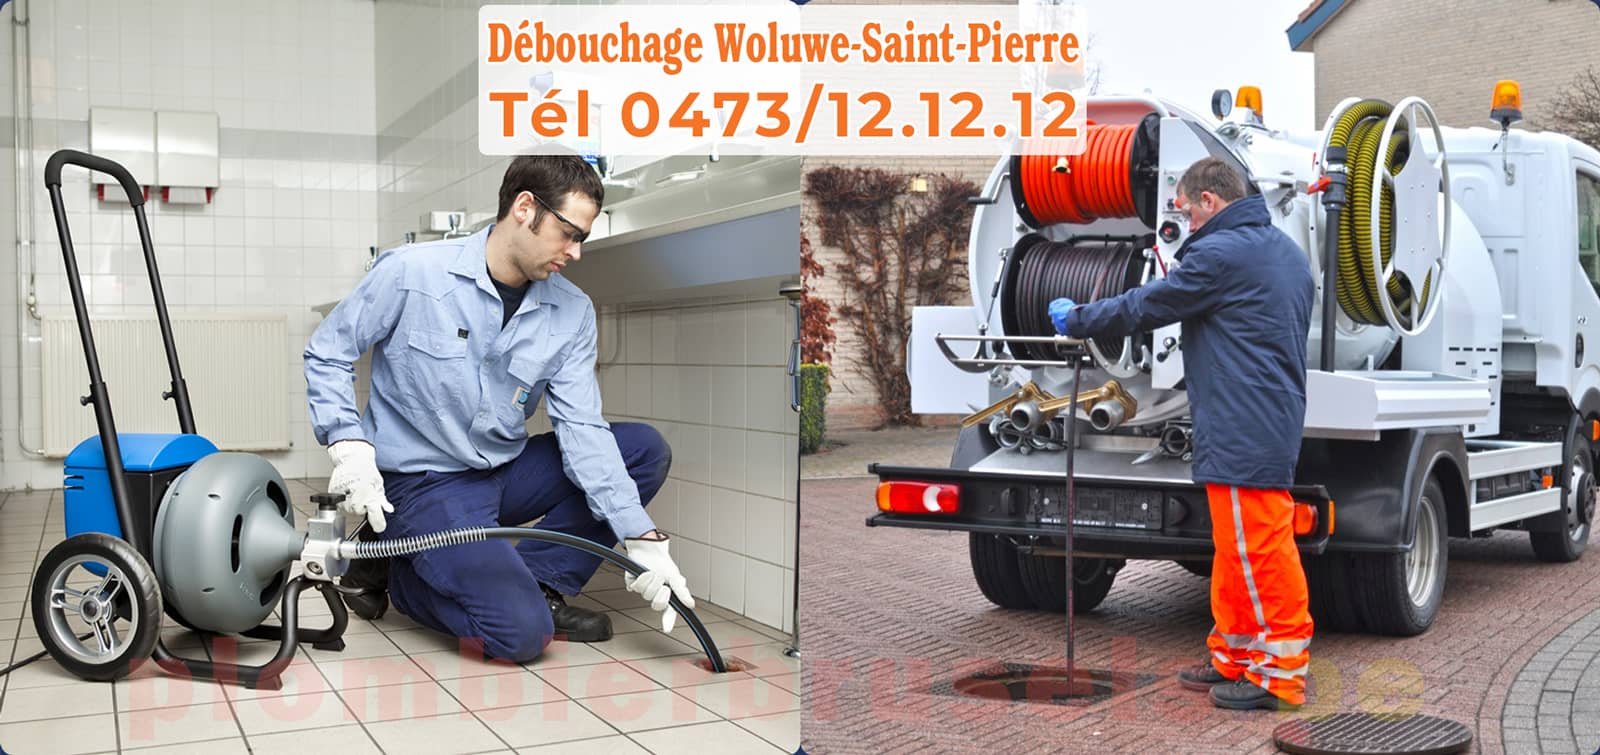 Plombier Brussels service de Débouchage Woluwe-Saint-Pierre d'égout tél 0473/12.12.12